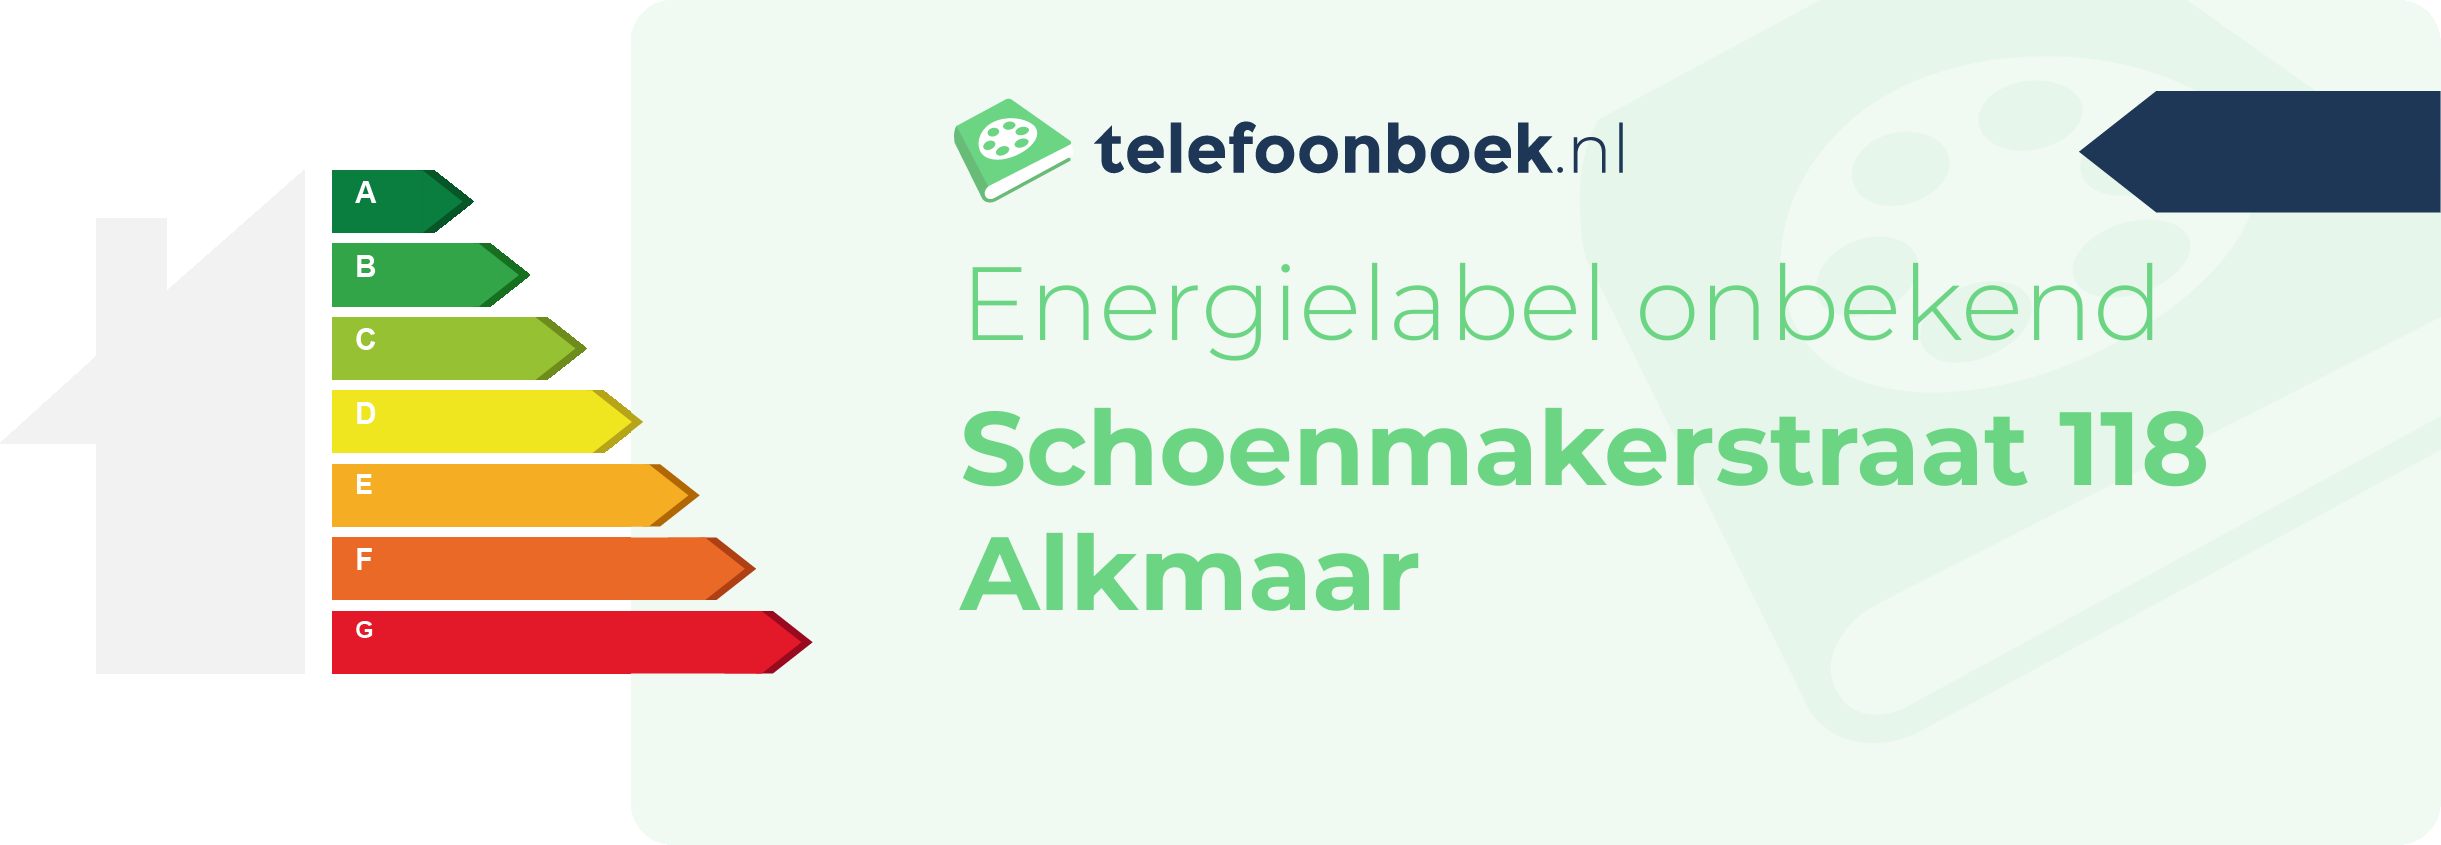 Energielabel Schoenmakerstraat 118 Alkmaar